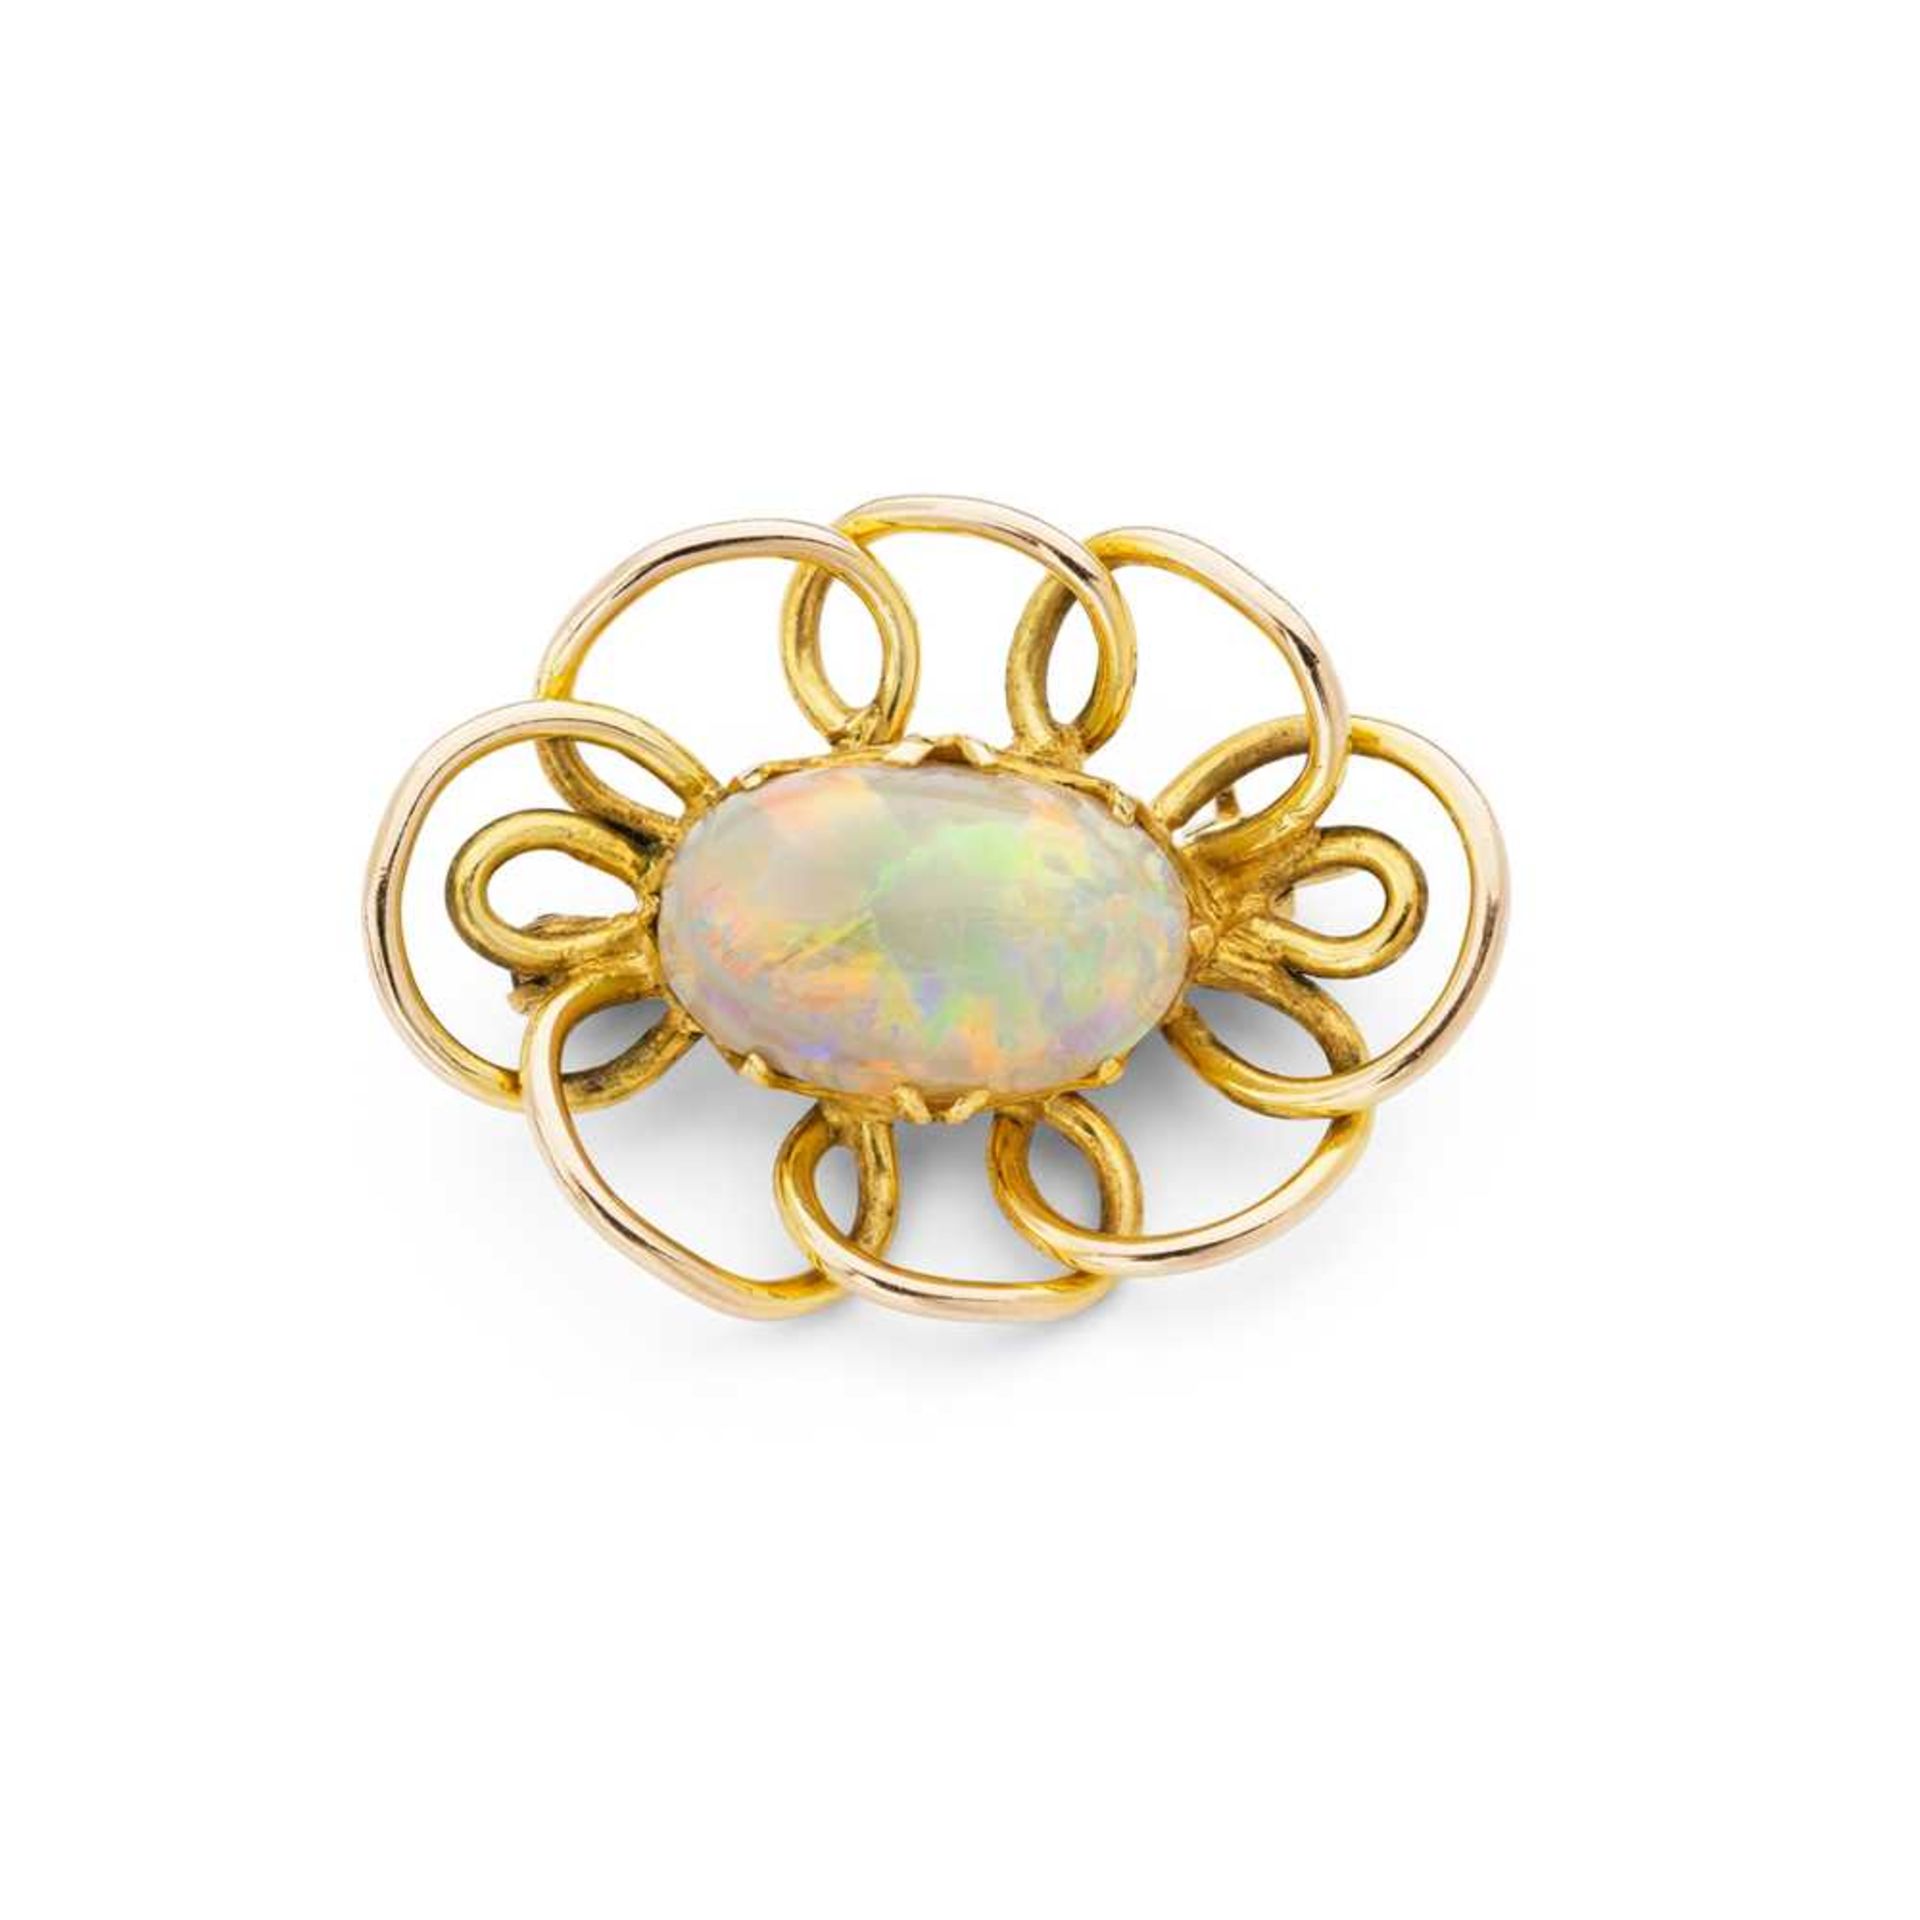 An opal brooch